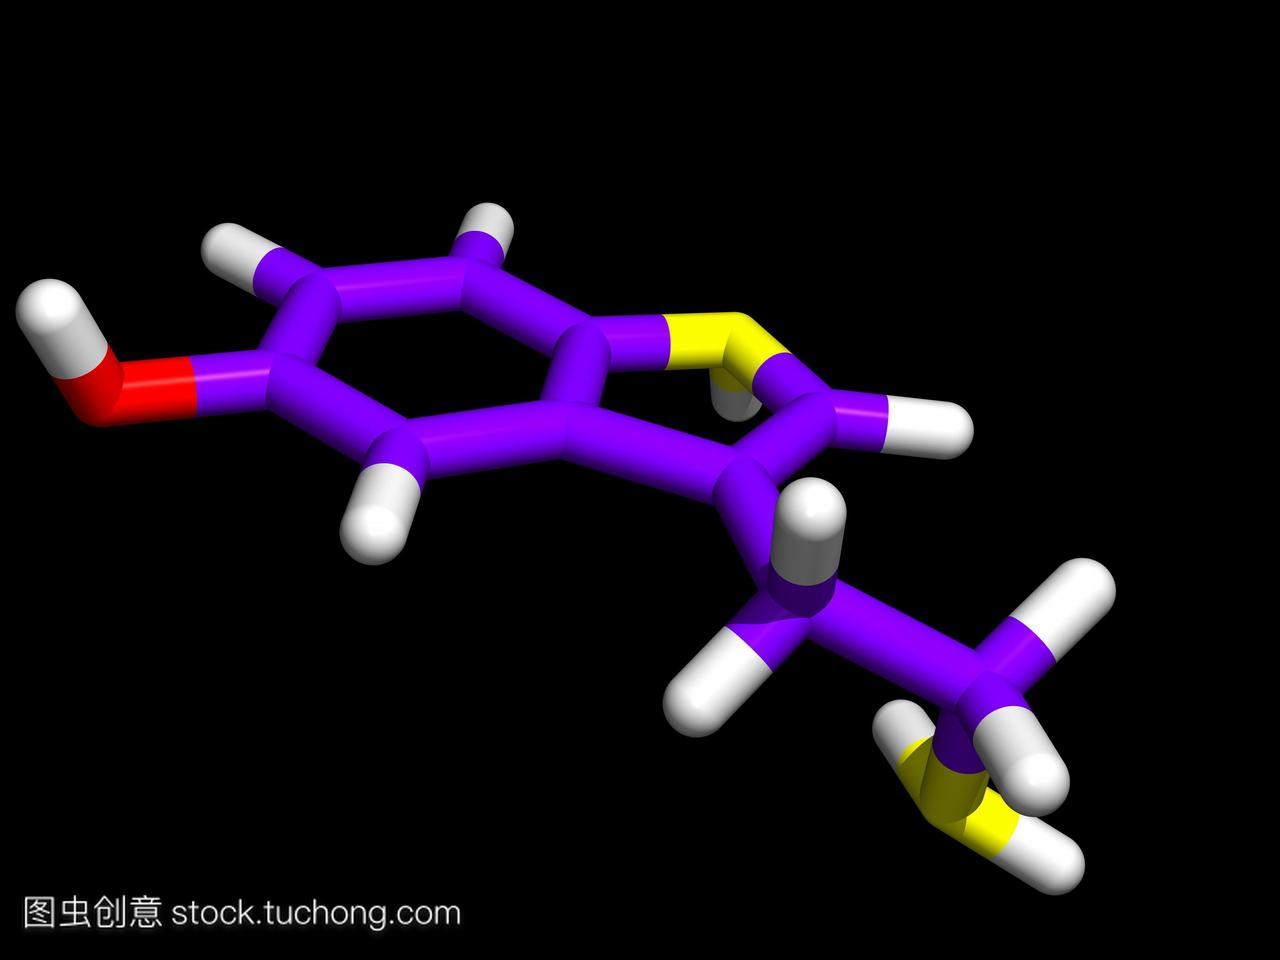 5-羟色胺。计算机模型分子的神经递质血清素5